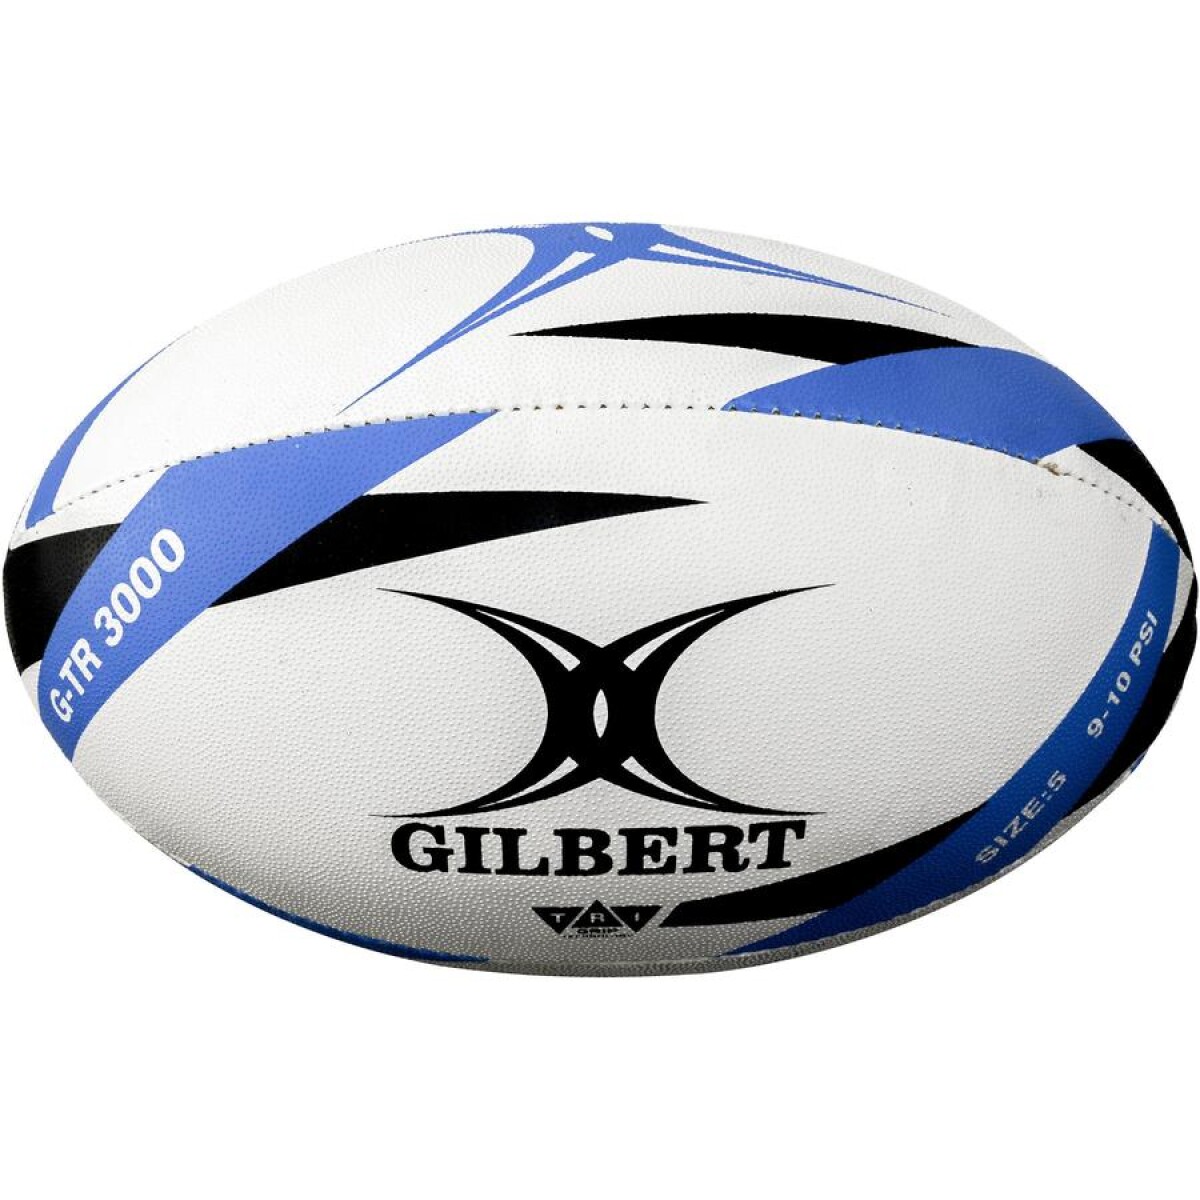 Pelota De Rugby Gilbert G-tr3000 Size 5 - 001 